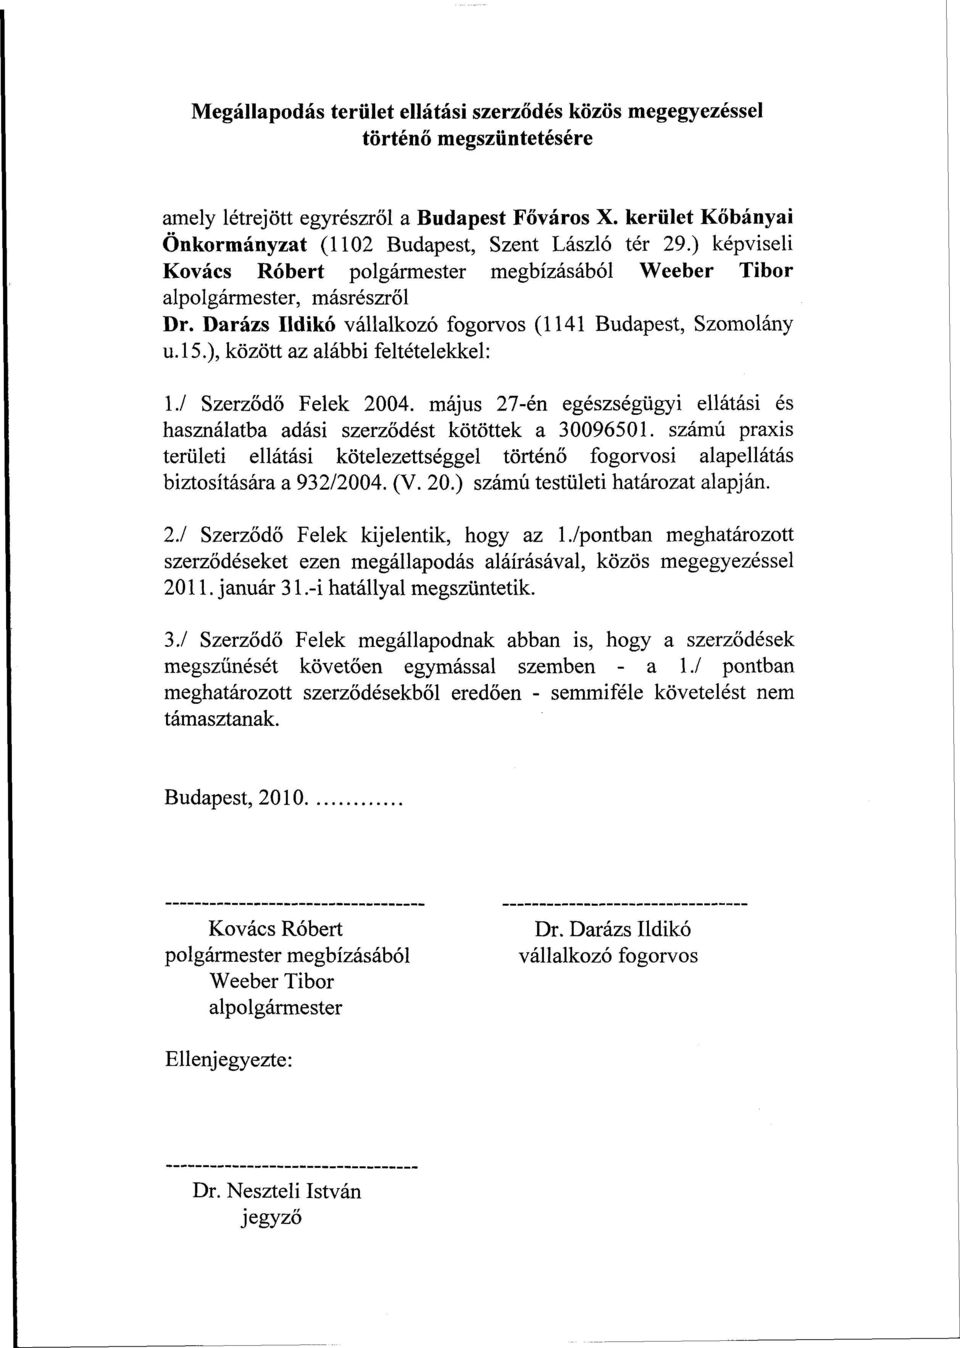 / Szerződő Felek 2004. május 27-én egészségügyi ellátási és használatba adási szerződést kötöttek a 30096501.